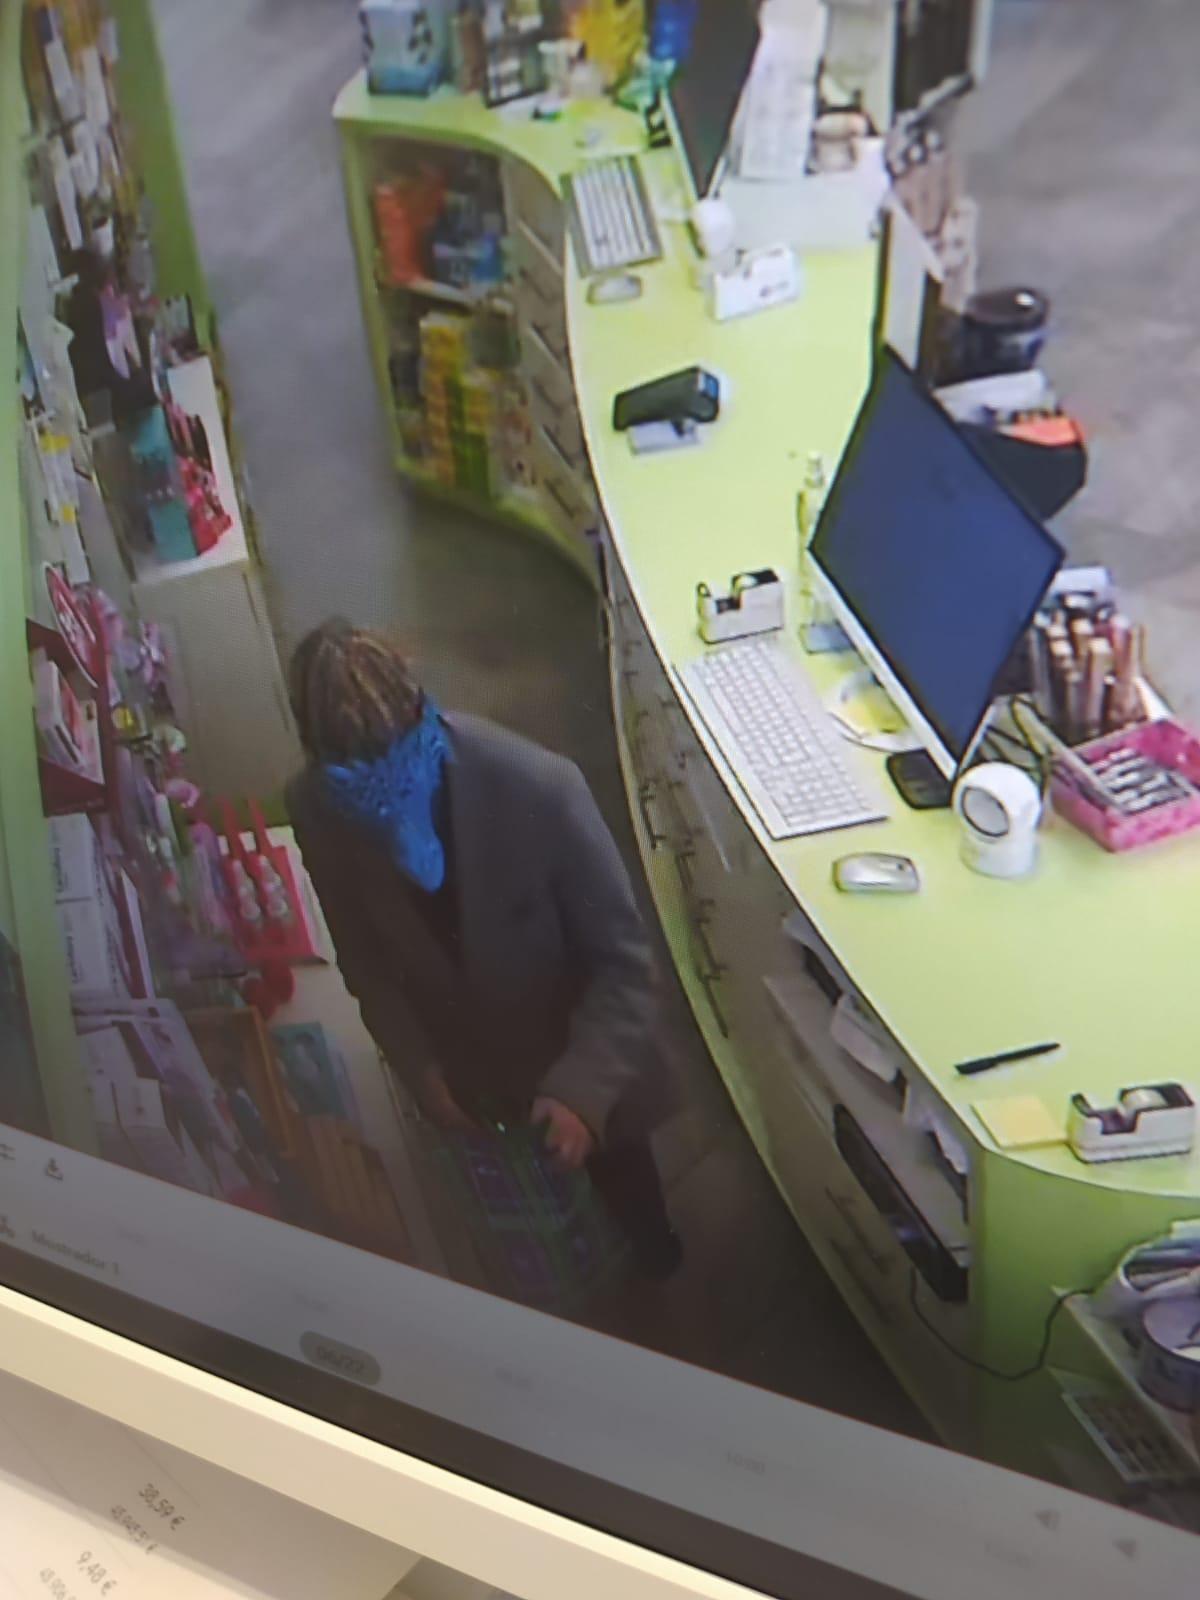 El atracador, durante el robo, en una imagen captada dentro de la farmacia asaltada.